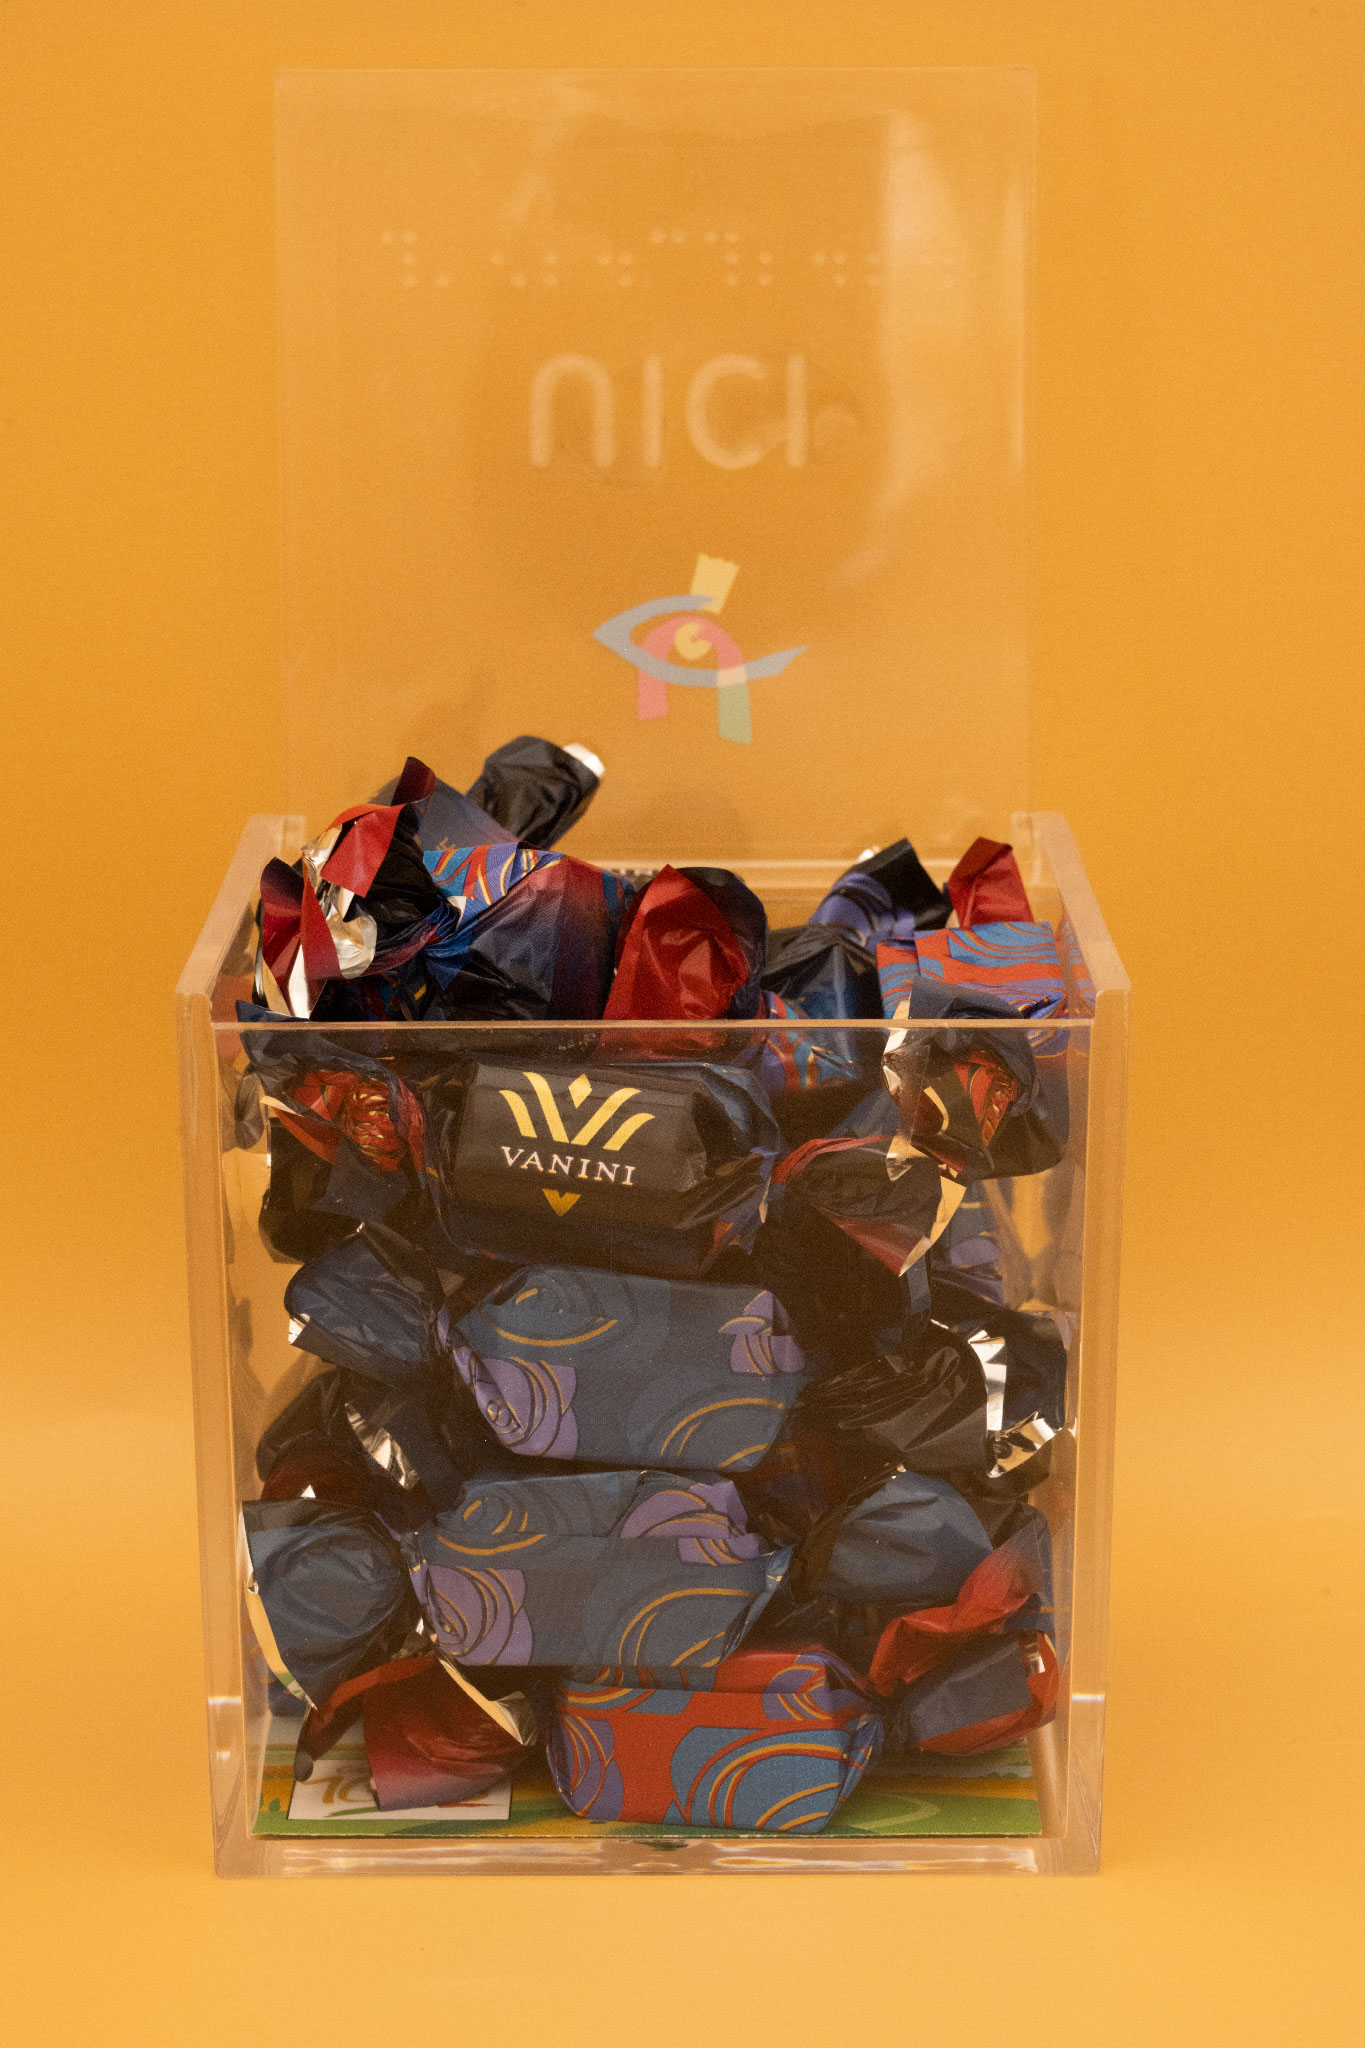 Cubo contenente i cioccolatini Vanini